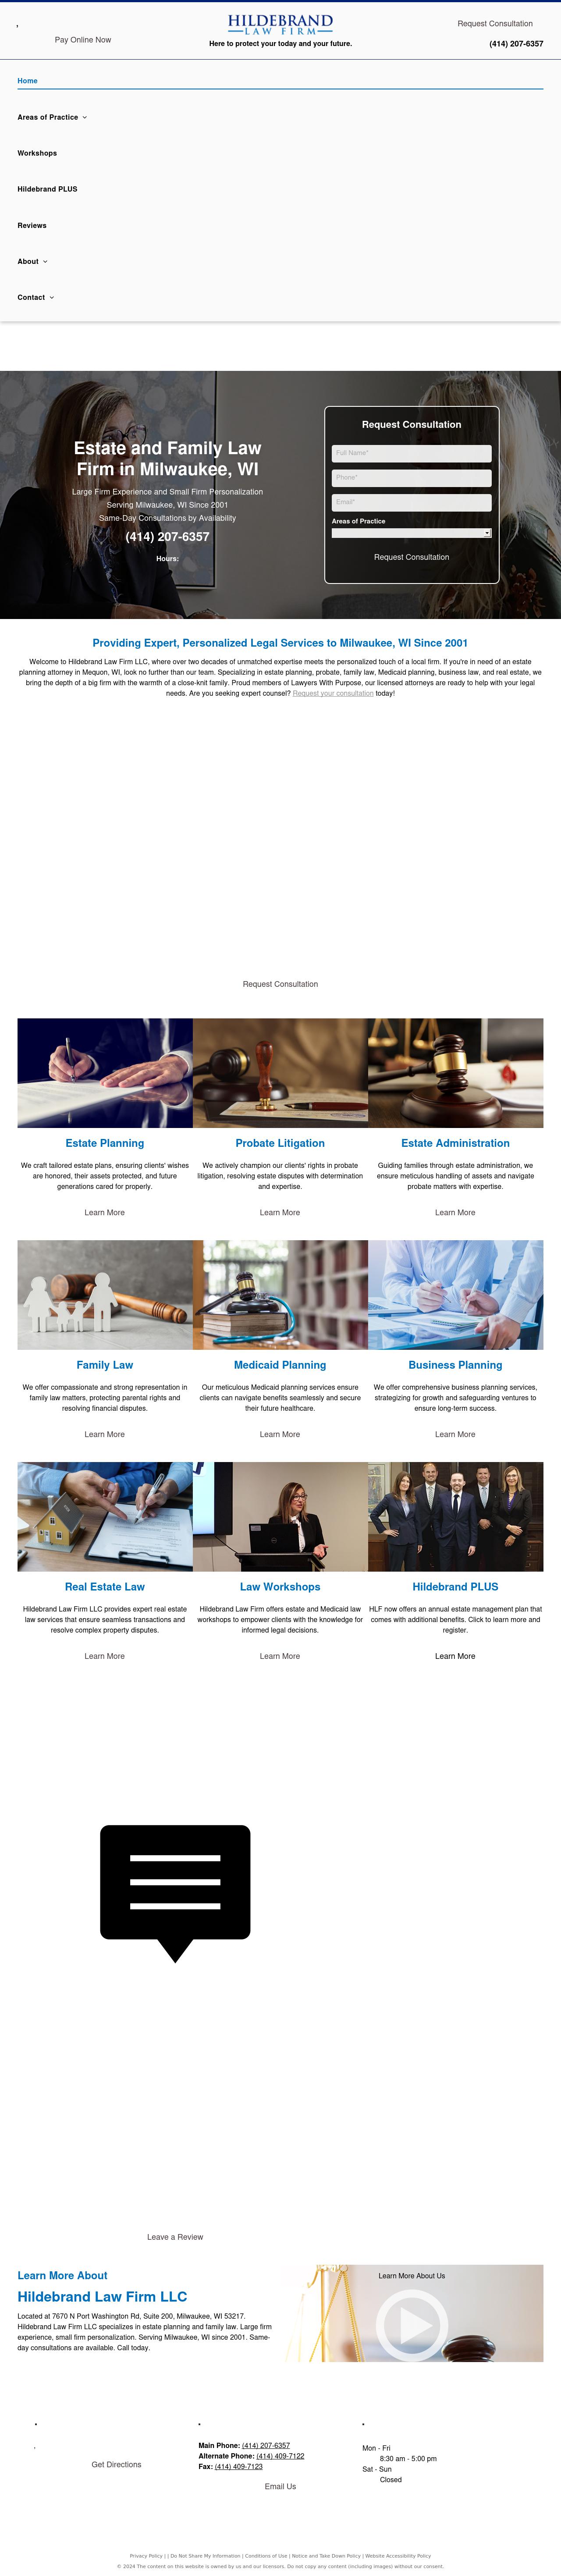 Hildebrand Law Firm, LLC - Milwaukee WI Lawyers